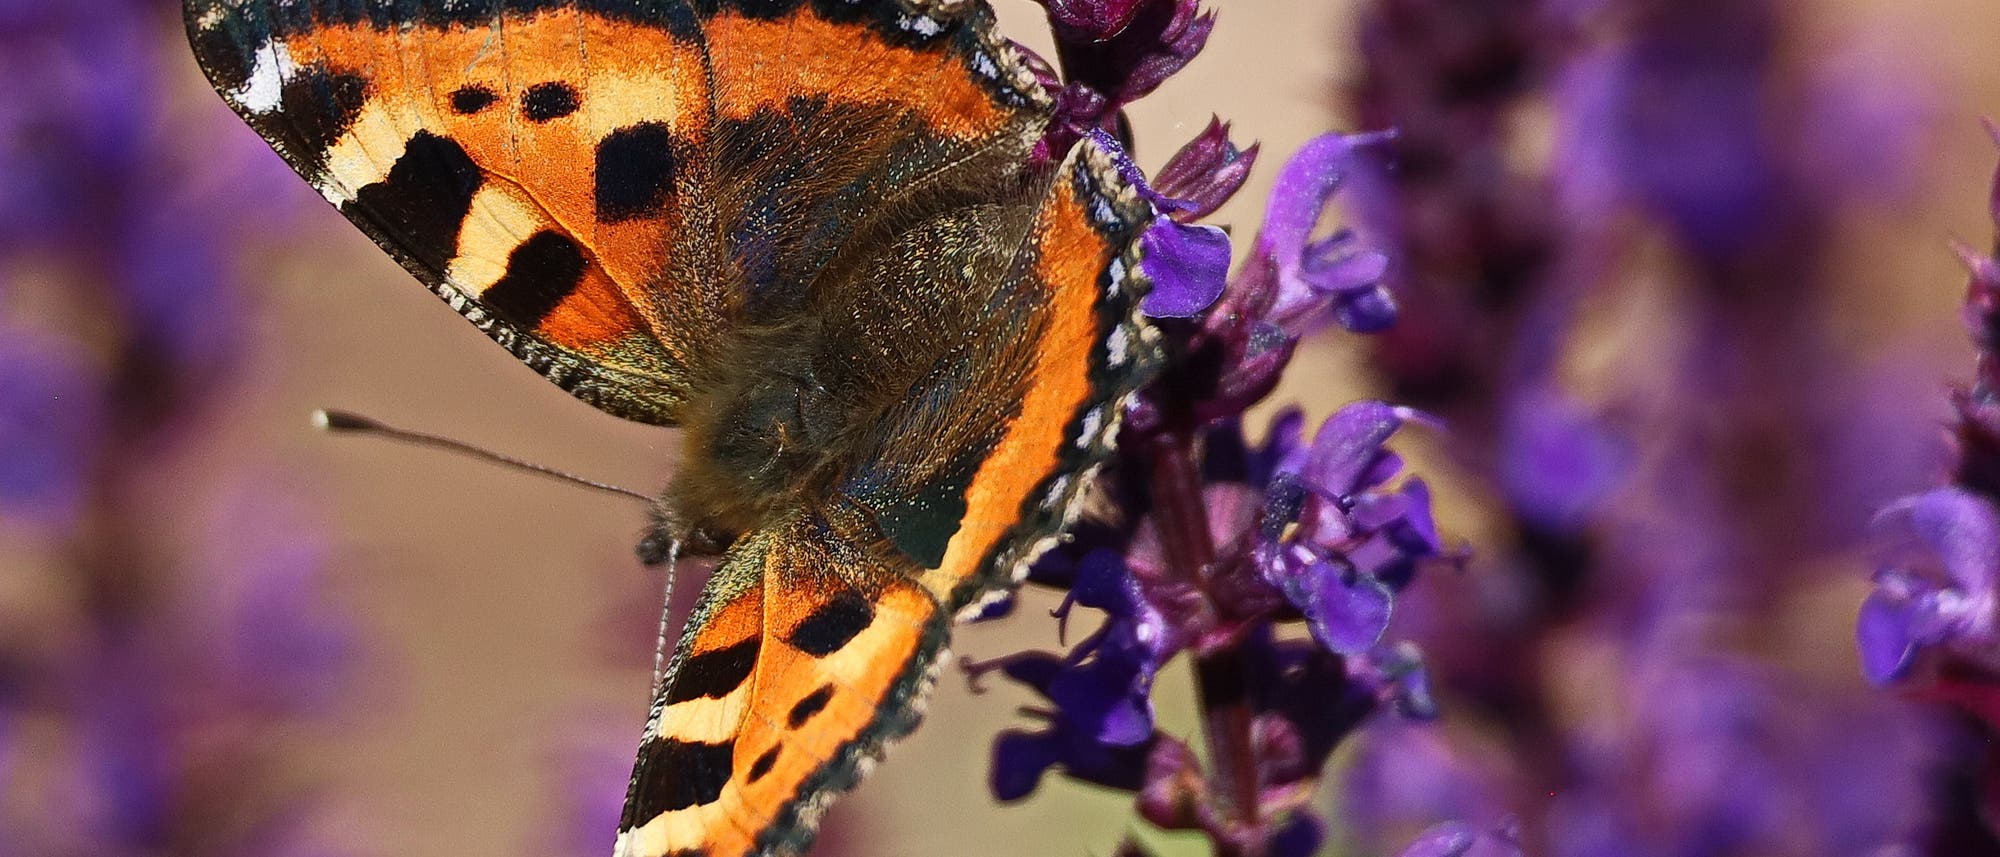 Ein Kleiner Fuchs genannter Schmetterling sitzt auf einer lilafarbenen Salbeiblüte. Die Flügel des Falters sind überwiegend orange mit schwarzen Flecken. Den Flügelrand zieren blaue Pünktchen. Der Körper ist braun und behaart.